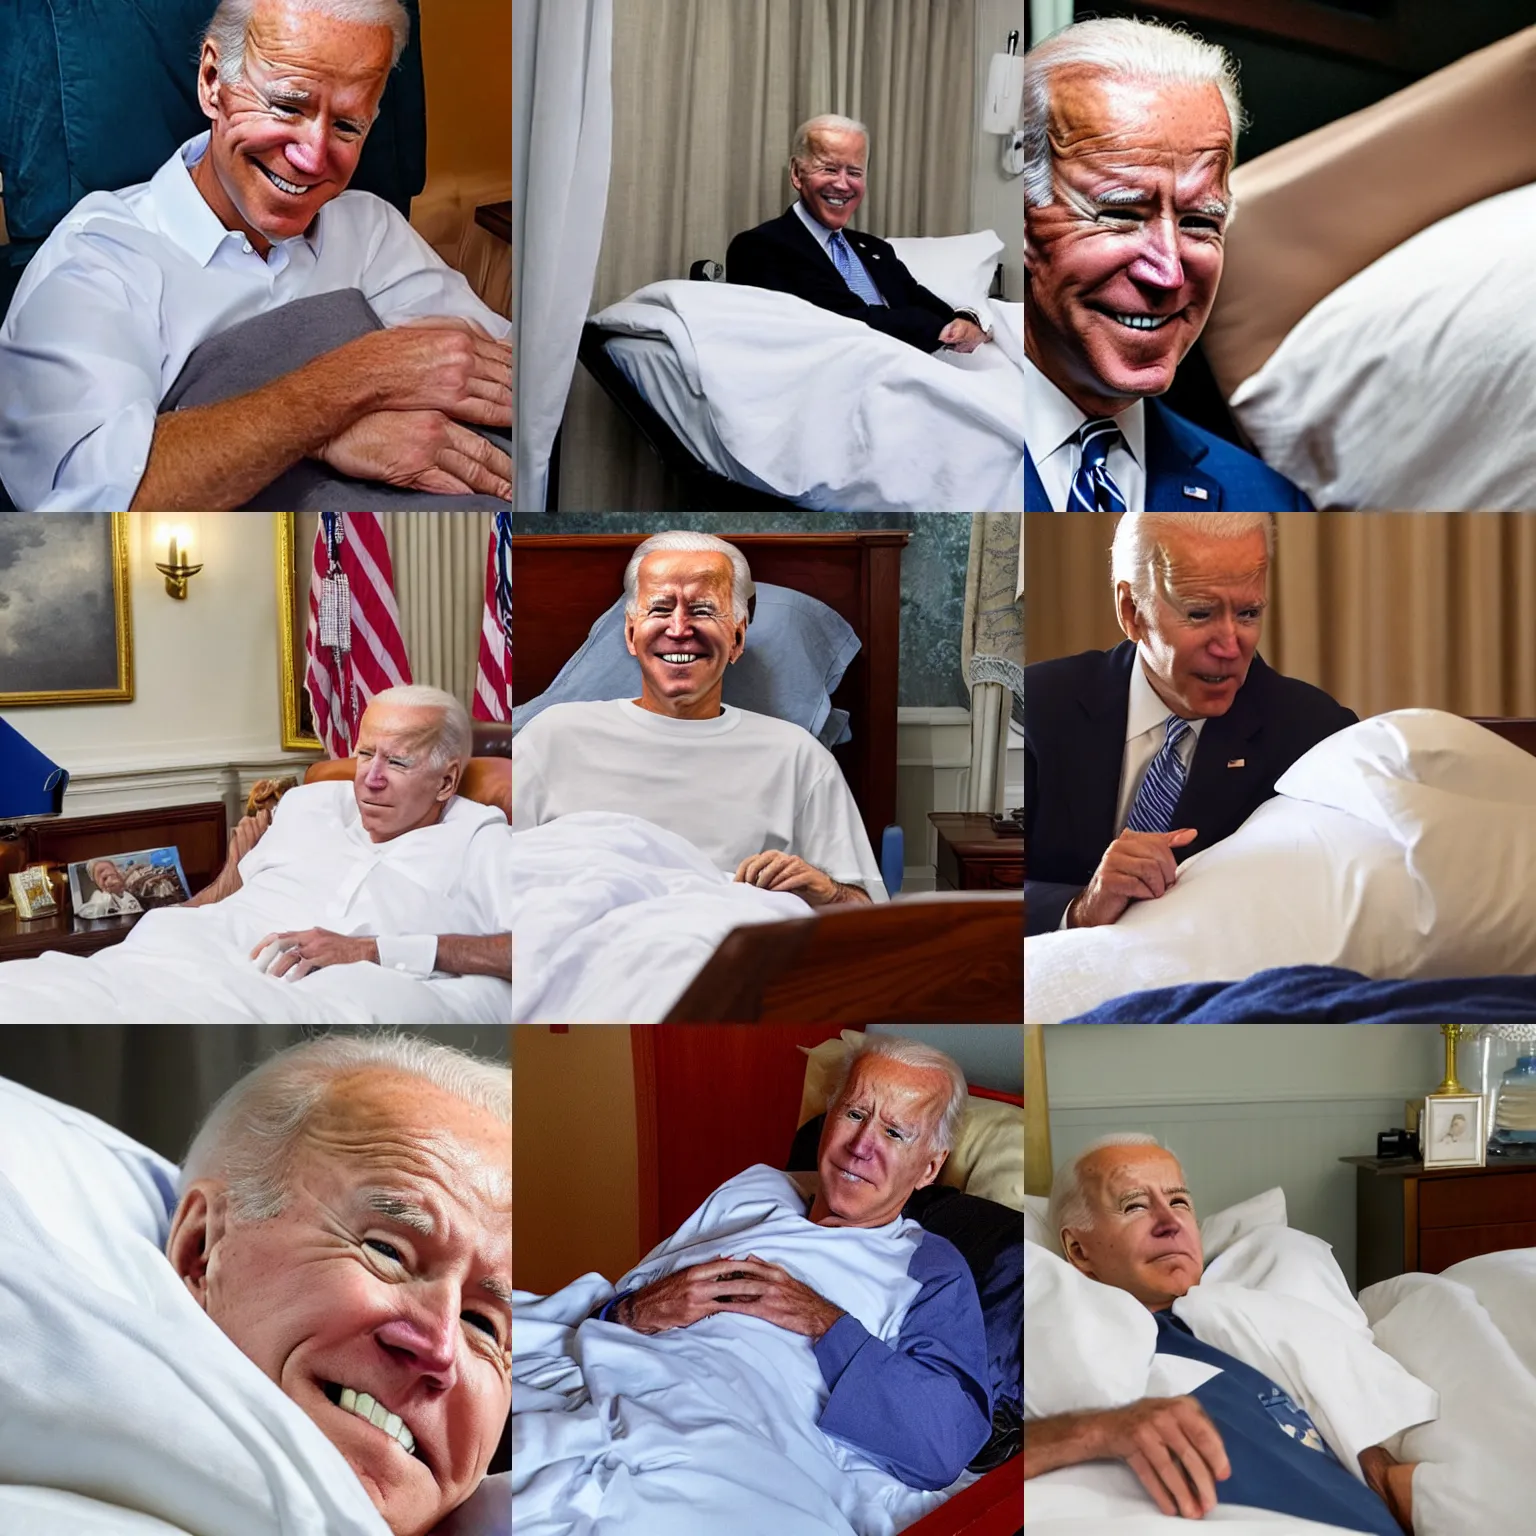 Prompt: photo of joe biden in hospice bed